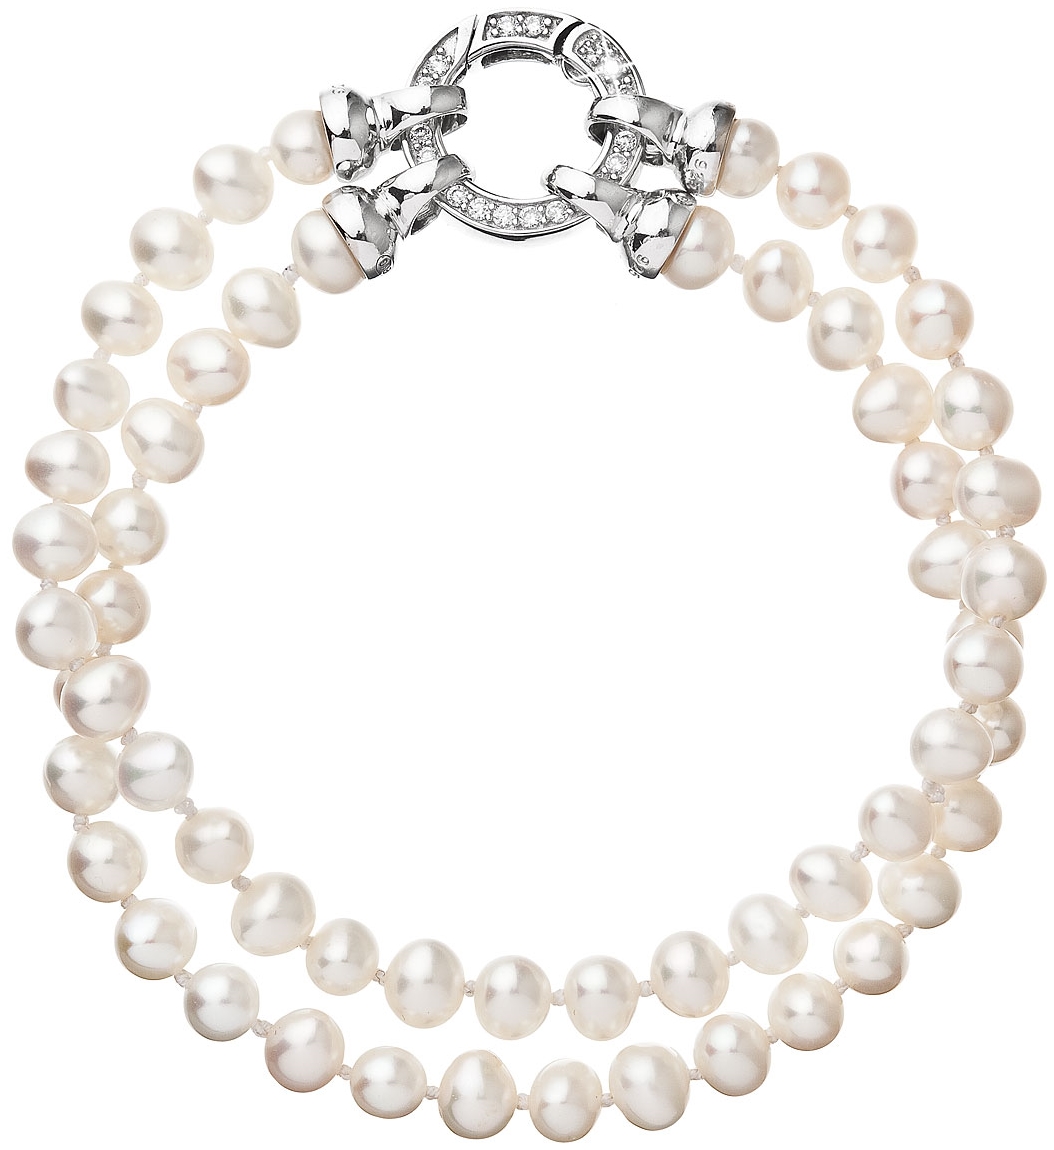 Perlový náramok dvojradový z pravých riečnych perál biely 23013.1